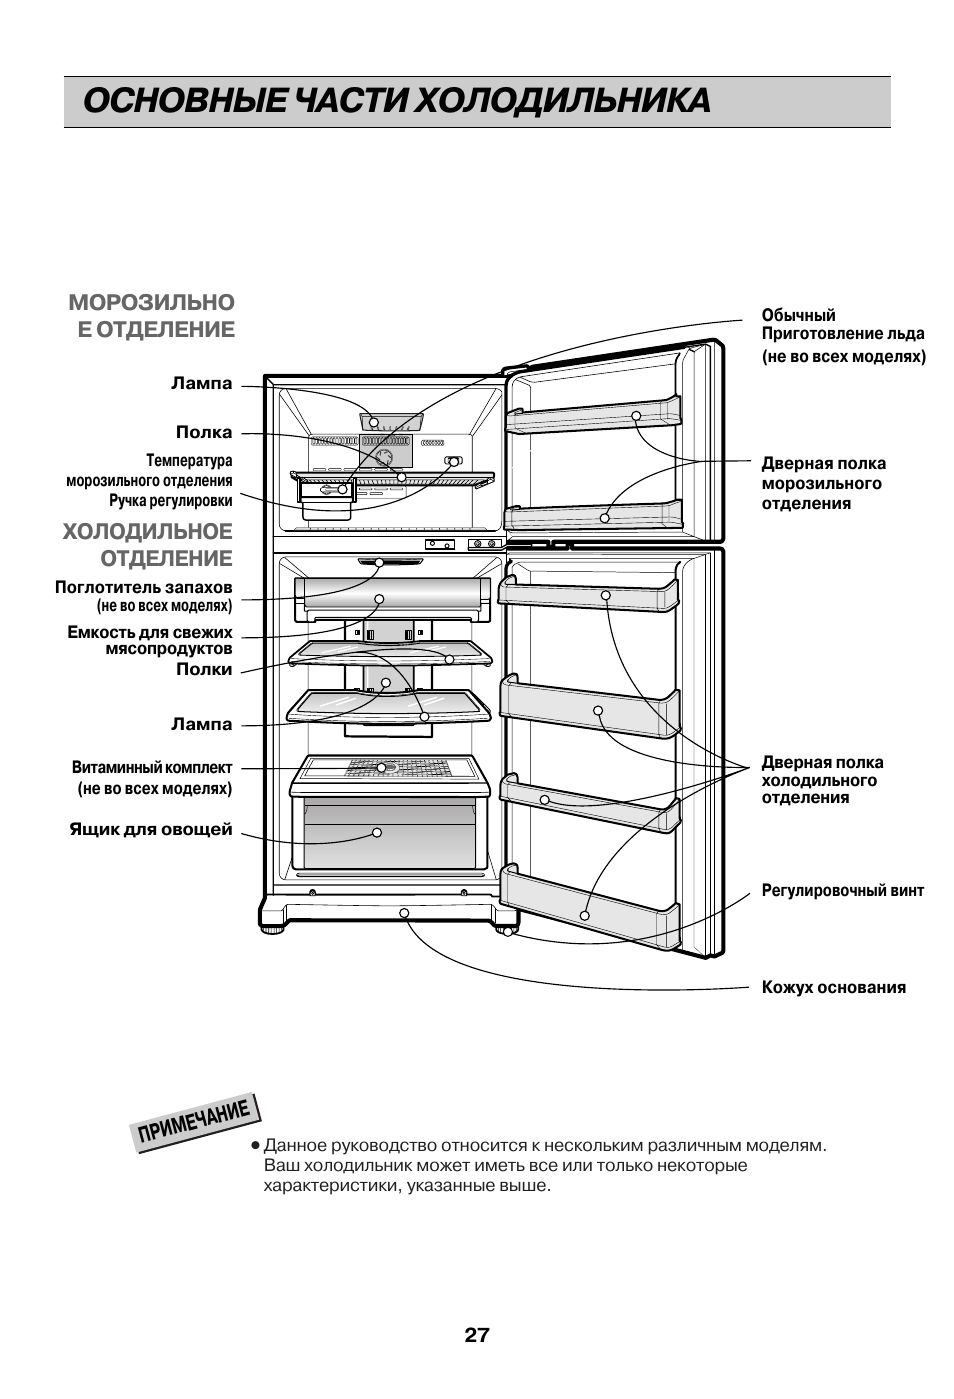 Основные части холодильника